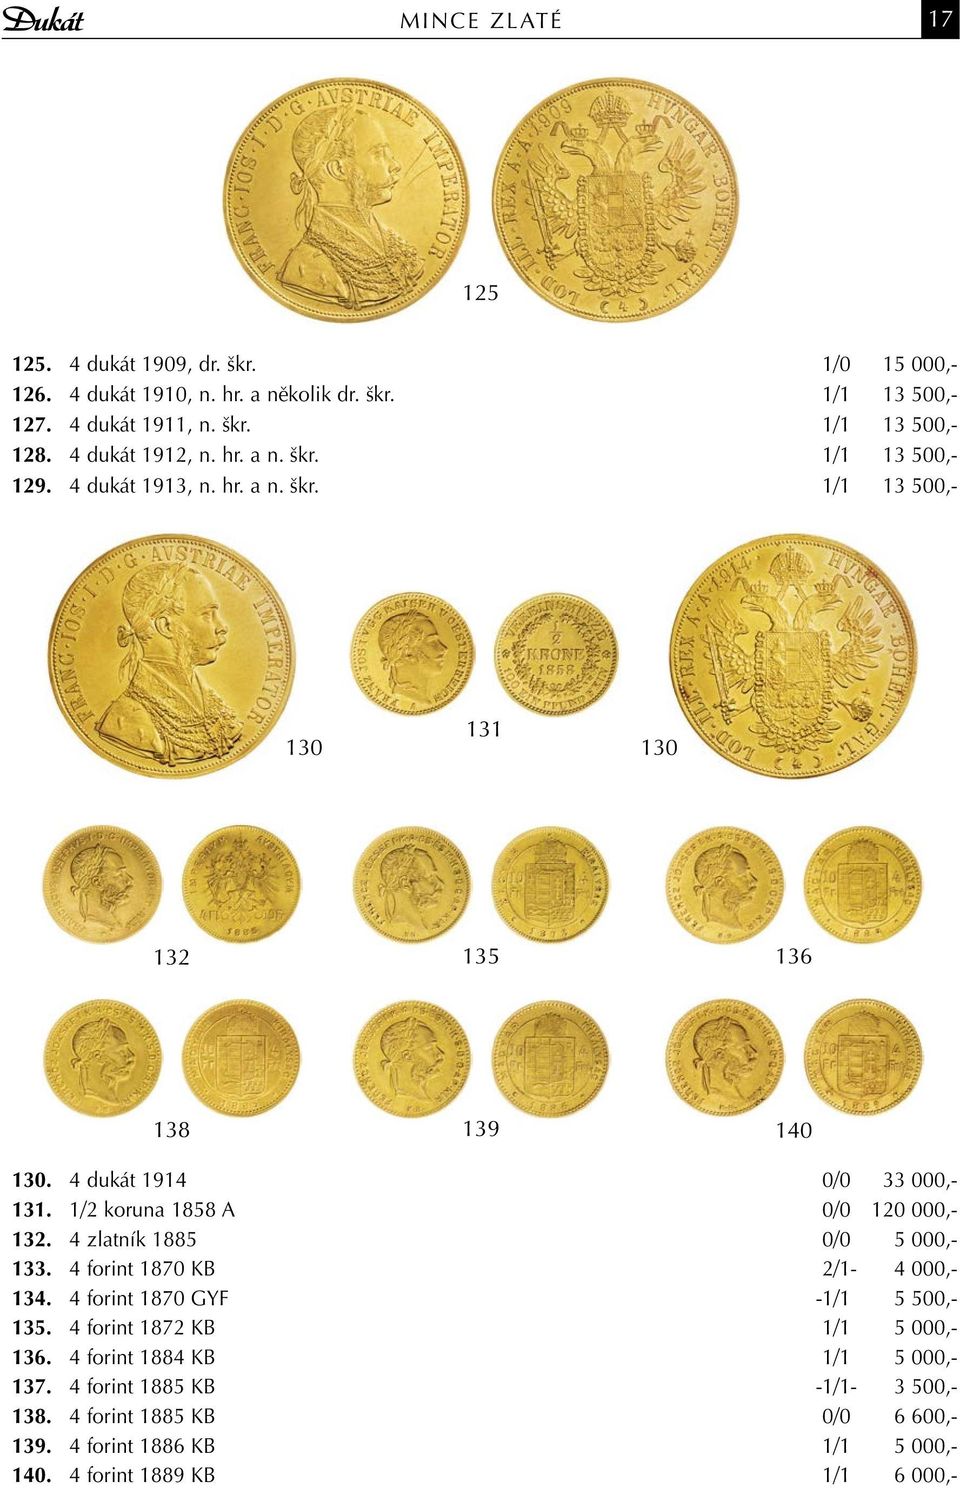 1/2 koruna 1858 A 0/0 120 000,- 132. 4 zlatník 1885 0/0 5 000,- 133. 4 forint 1870 KB 2/1-4 000,- 134. 4 forint 1870 GYF -1/1 5 500,- 135.